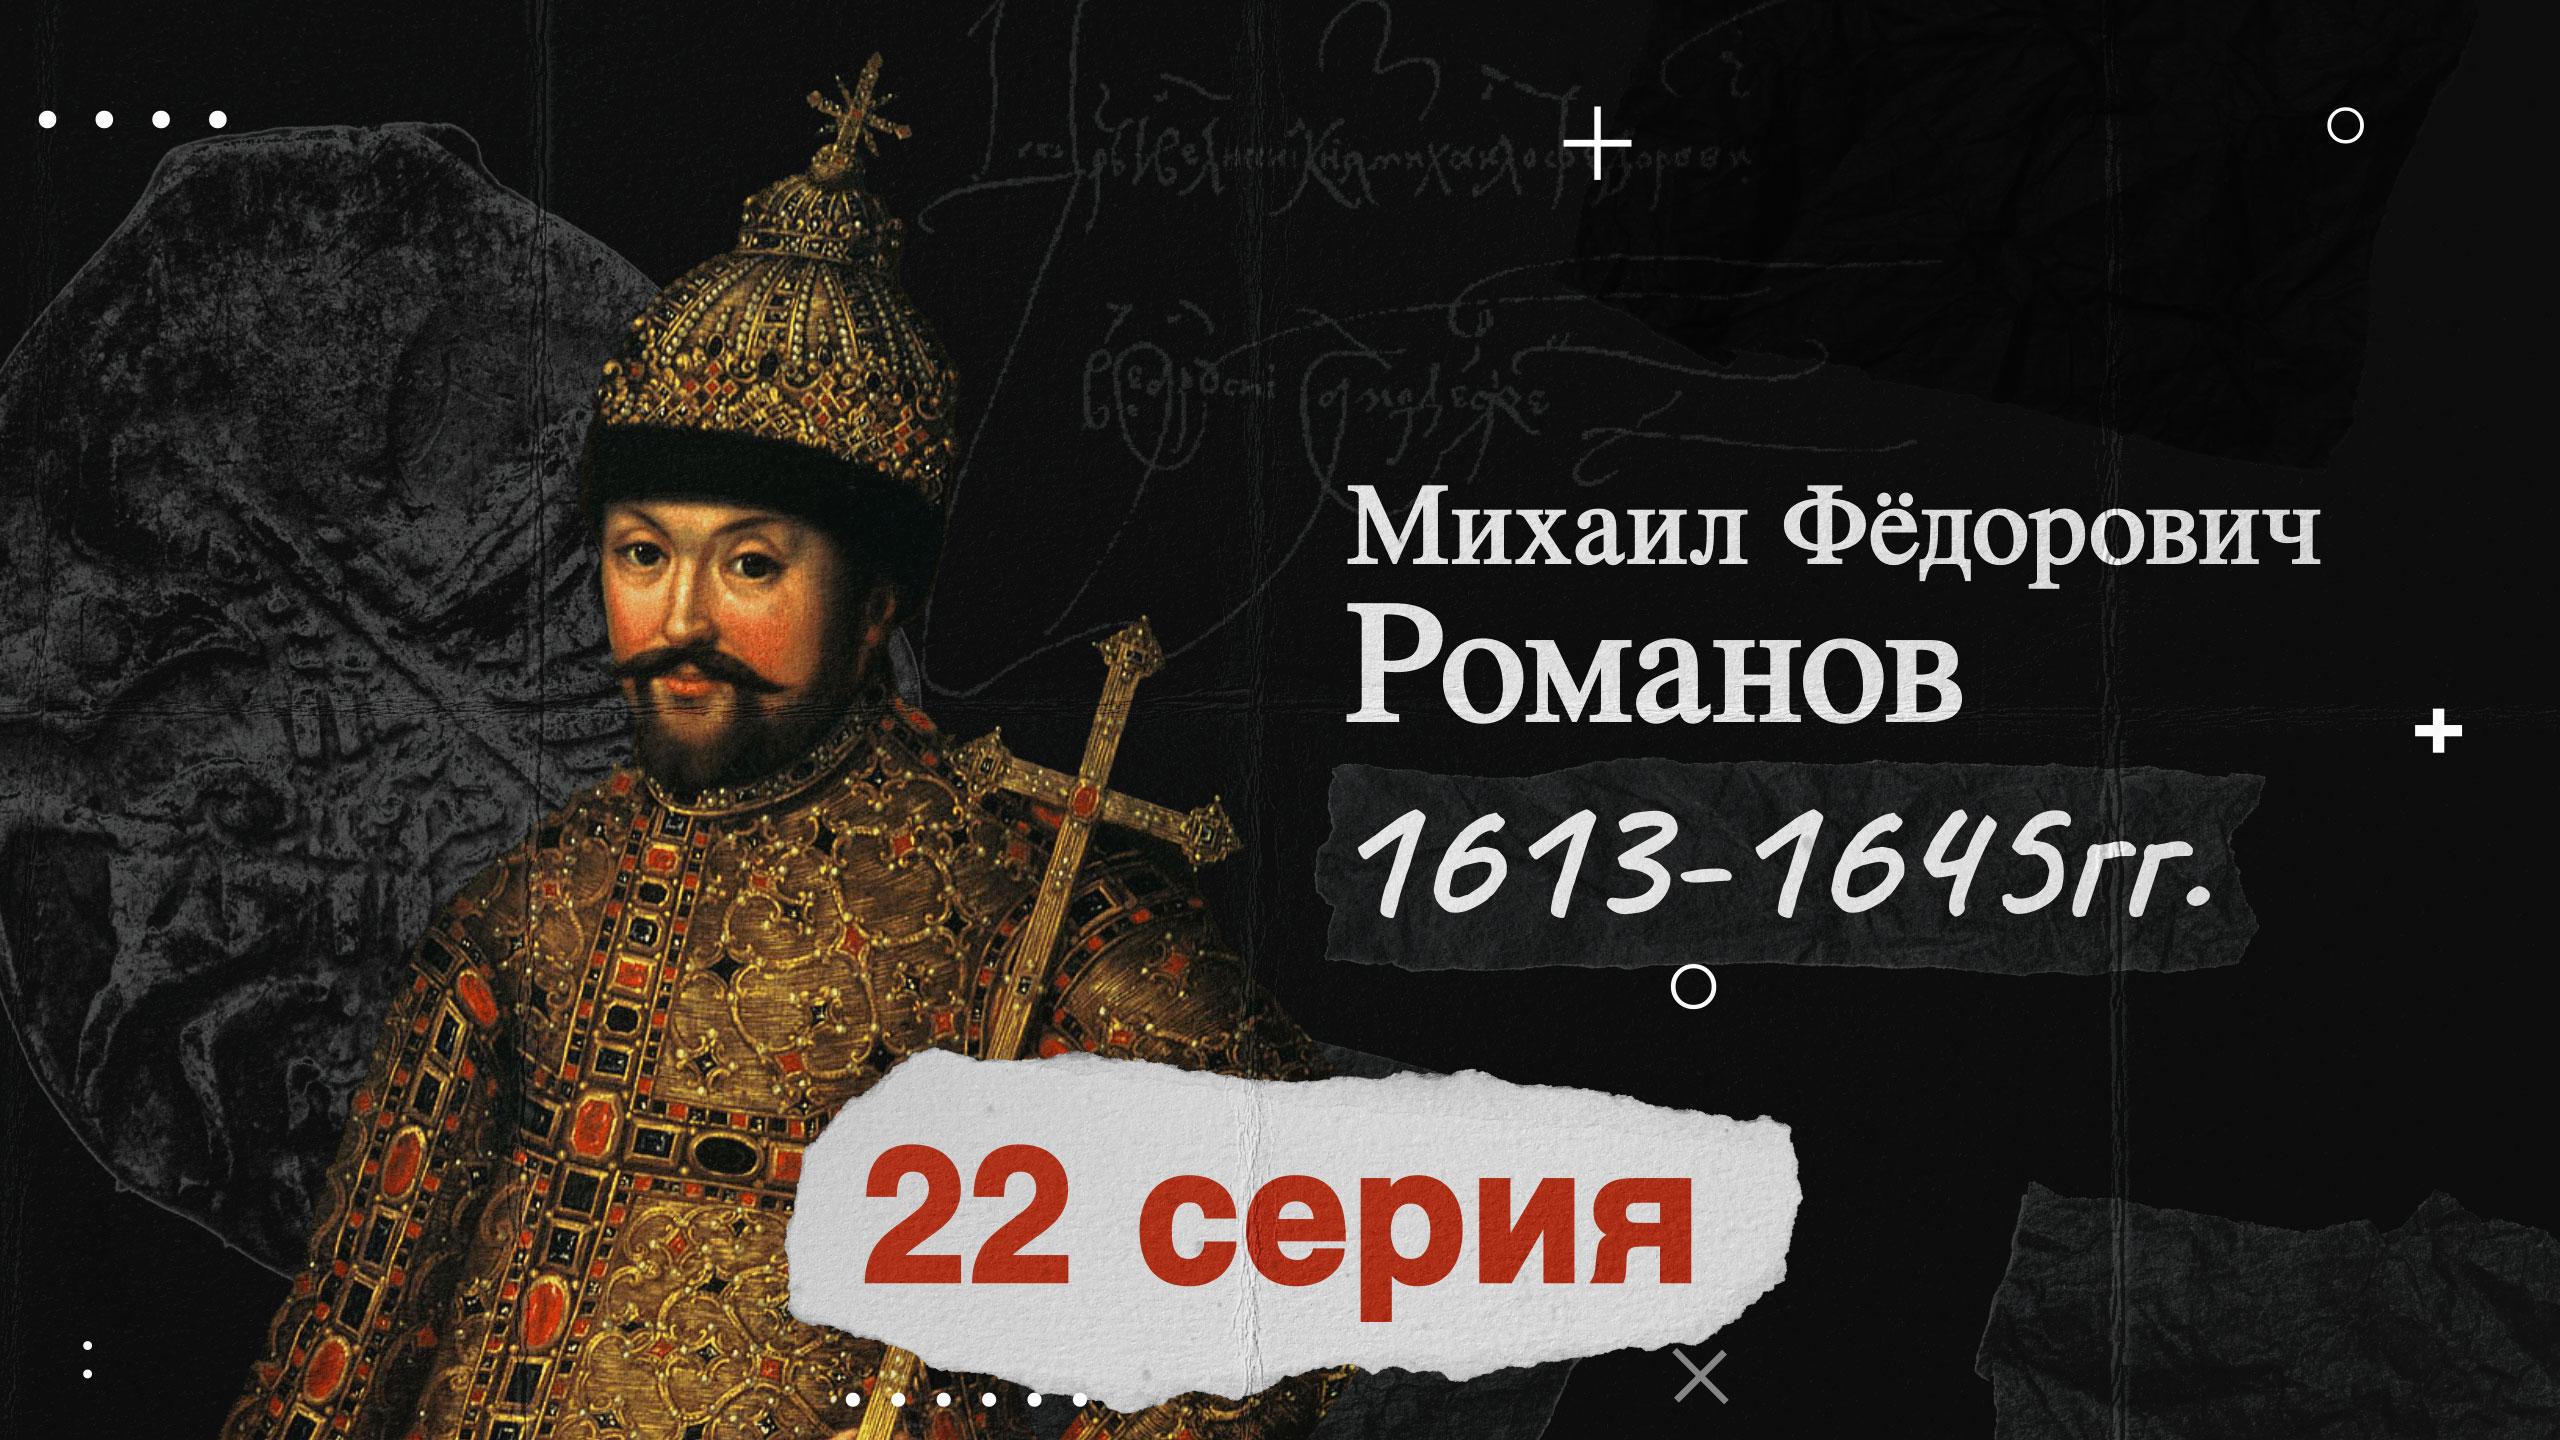 Царь Михаил Федорович Романов - 1613-1645г. История России